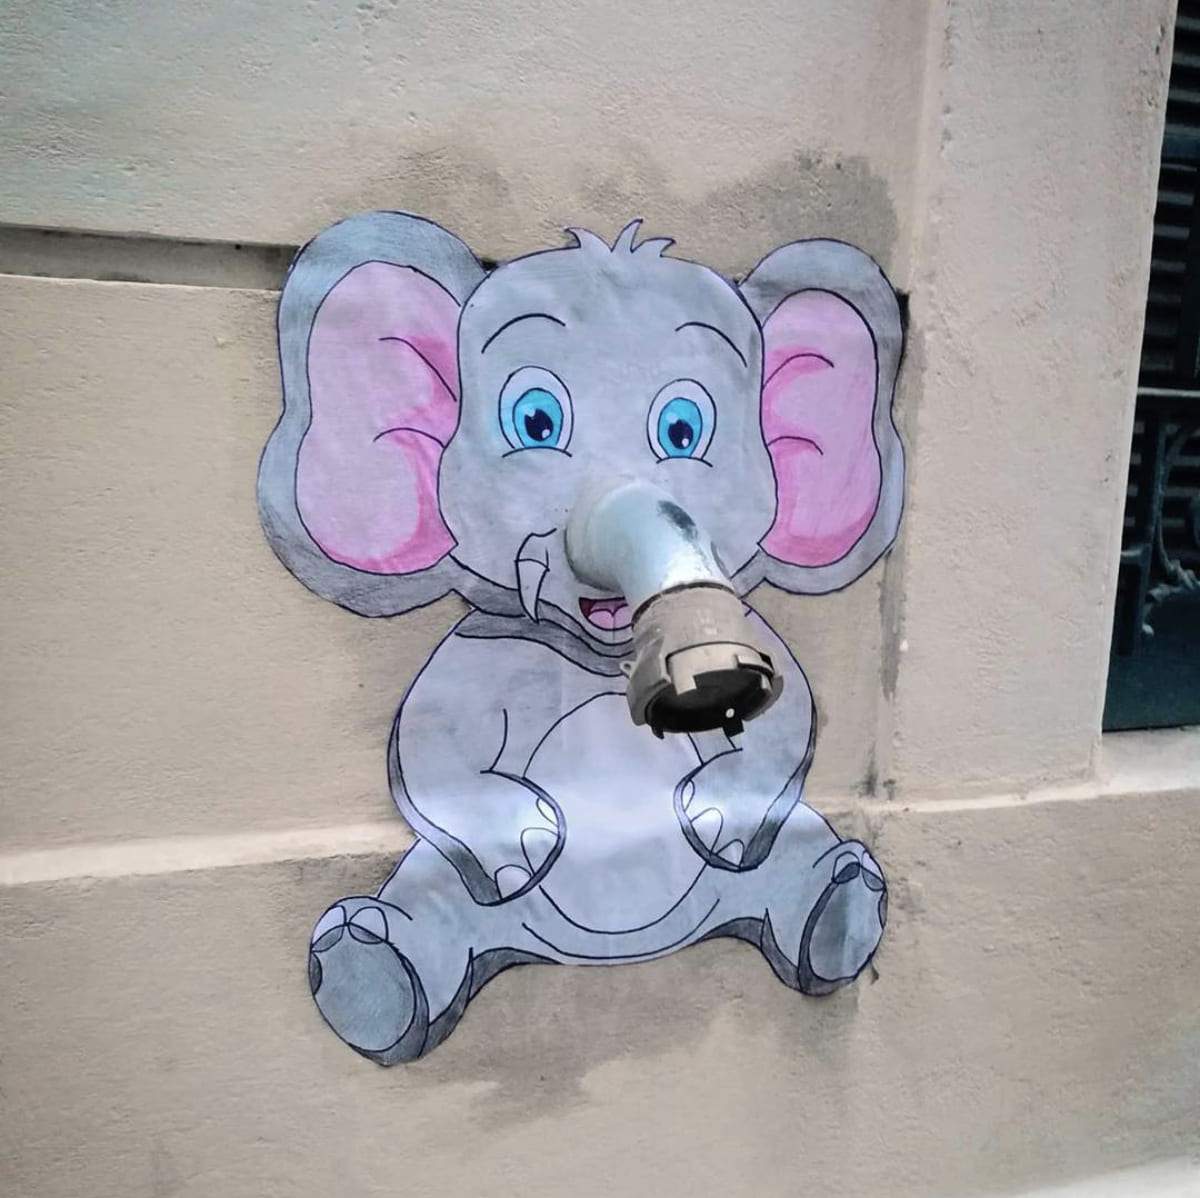 street art Montpellier France EFIX dumbo 2